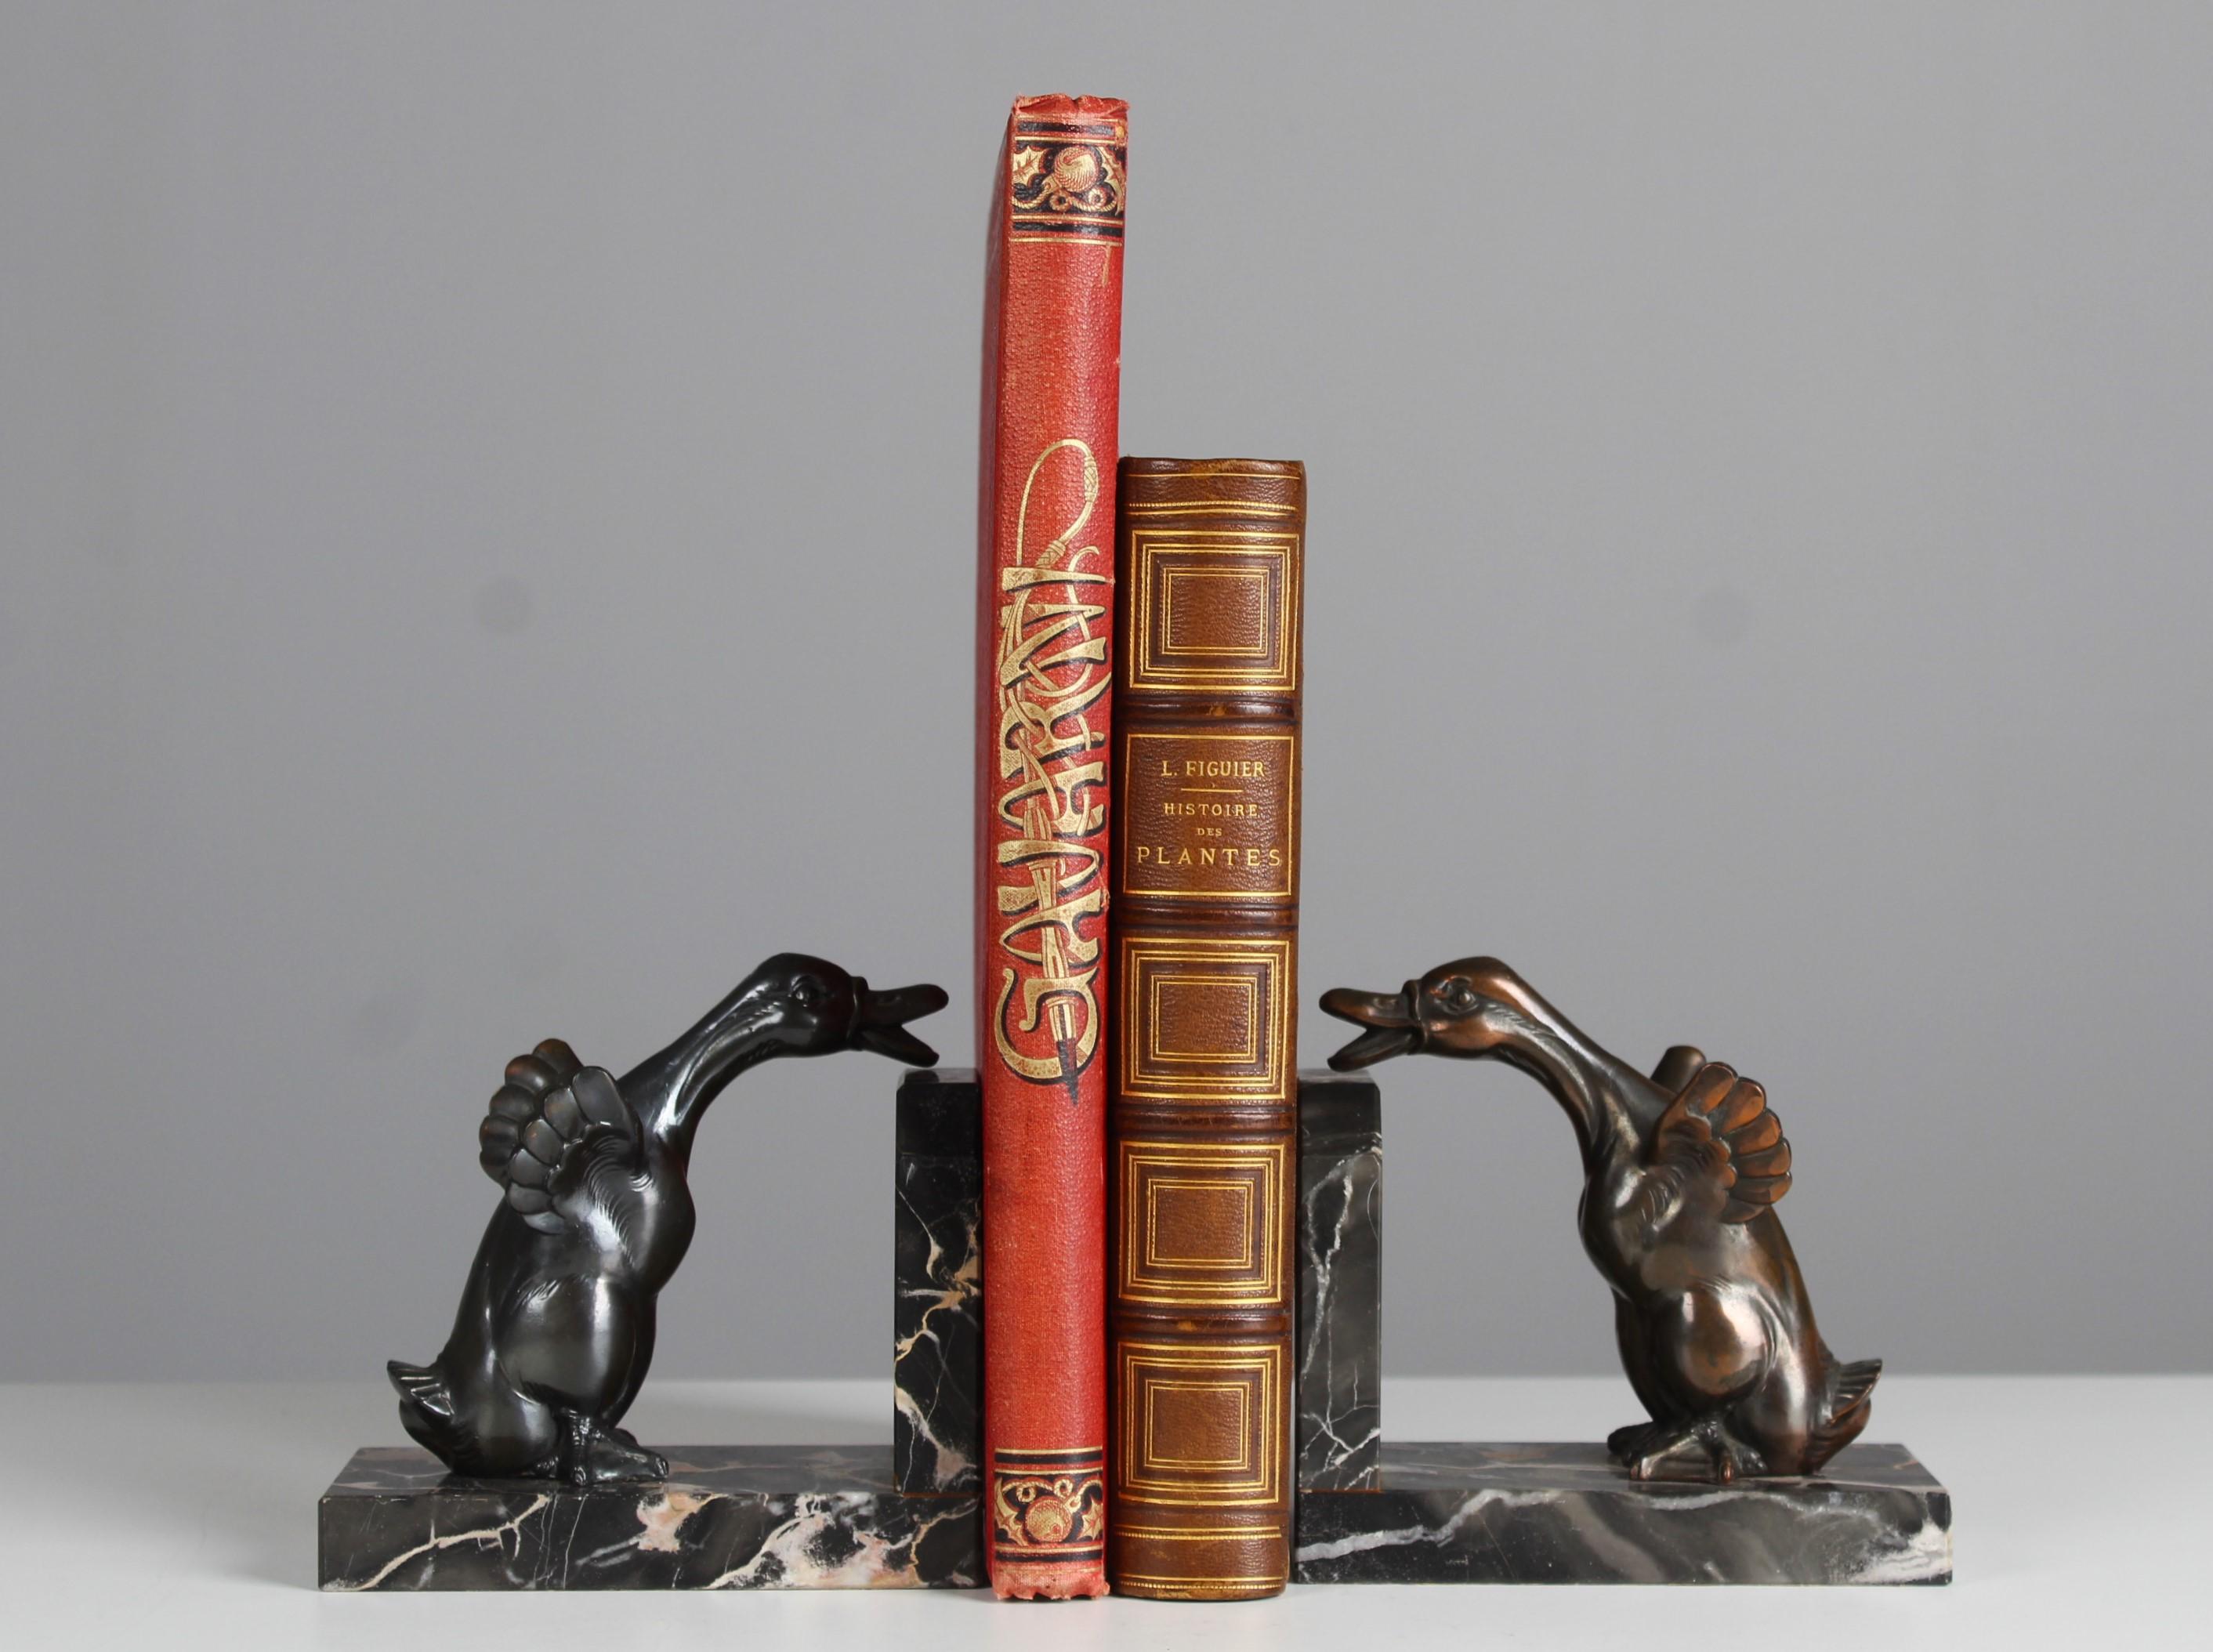 Magnifiques serre-livres anciens avec des sculptures de deux oies sur une base en marbre.
